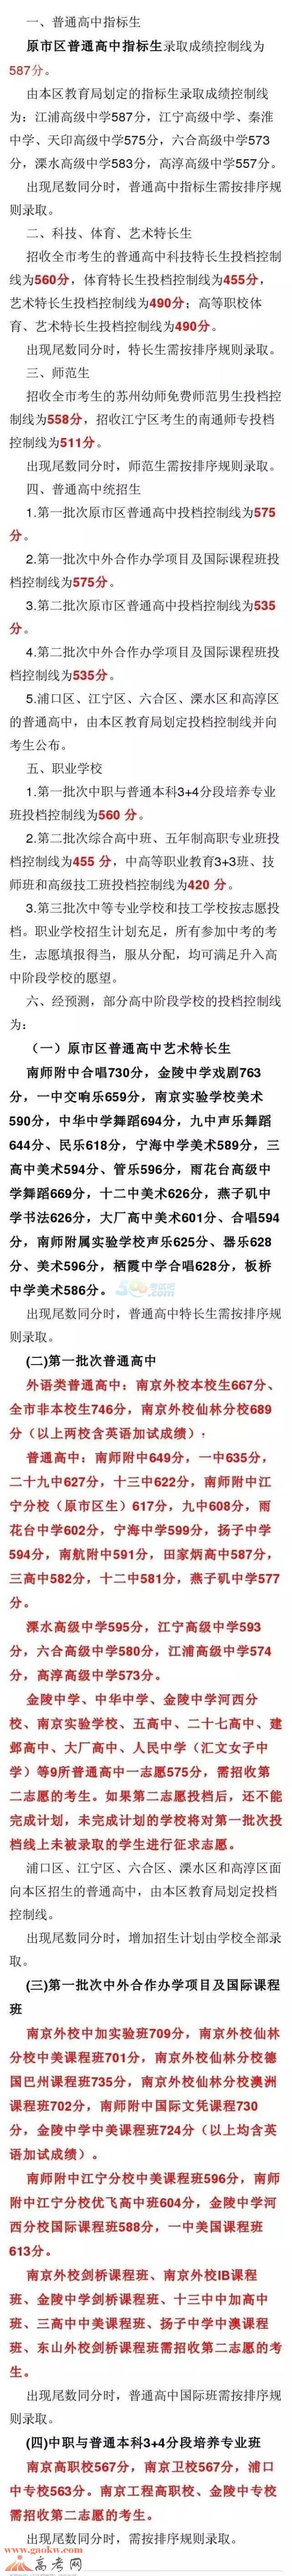 2016年南京中考录取分数线